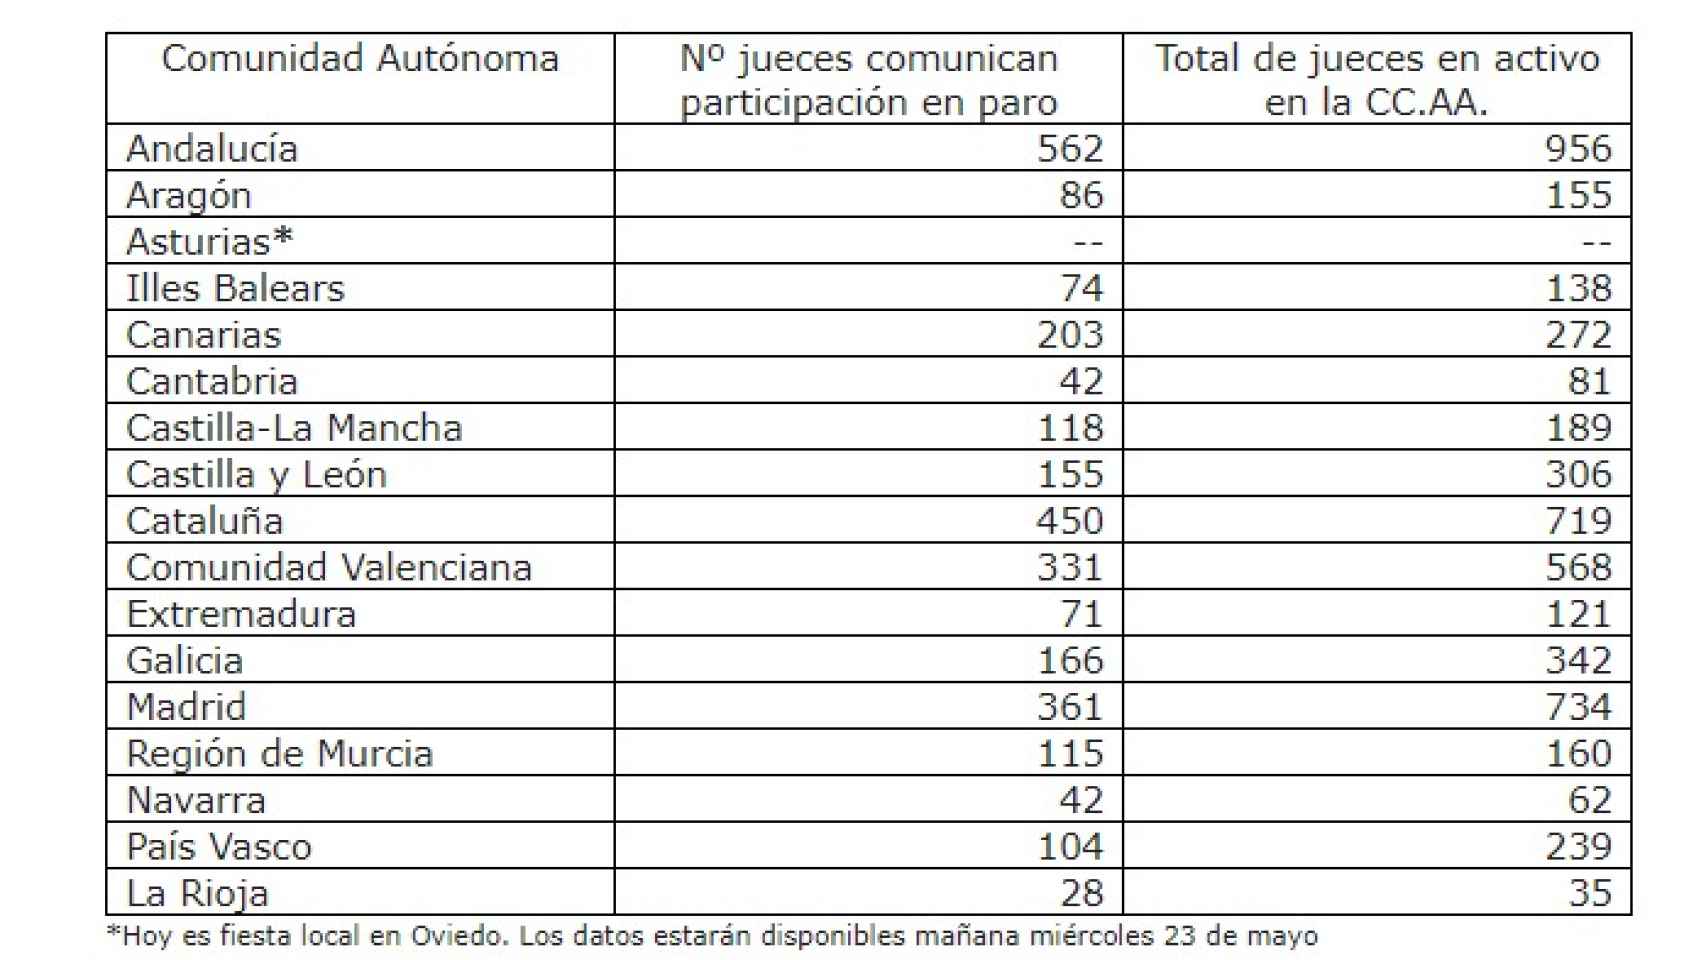 Datos sobre el seguimiento del paro por comunidades autónomas.